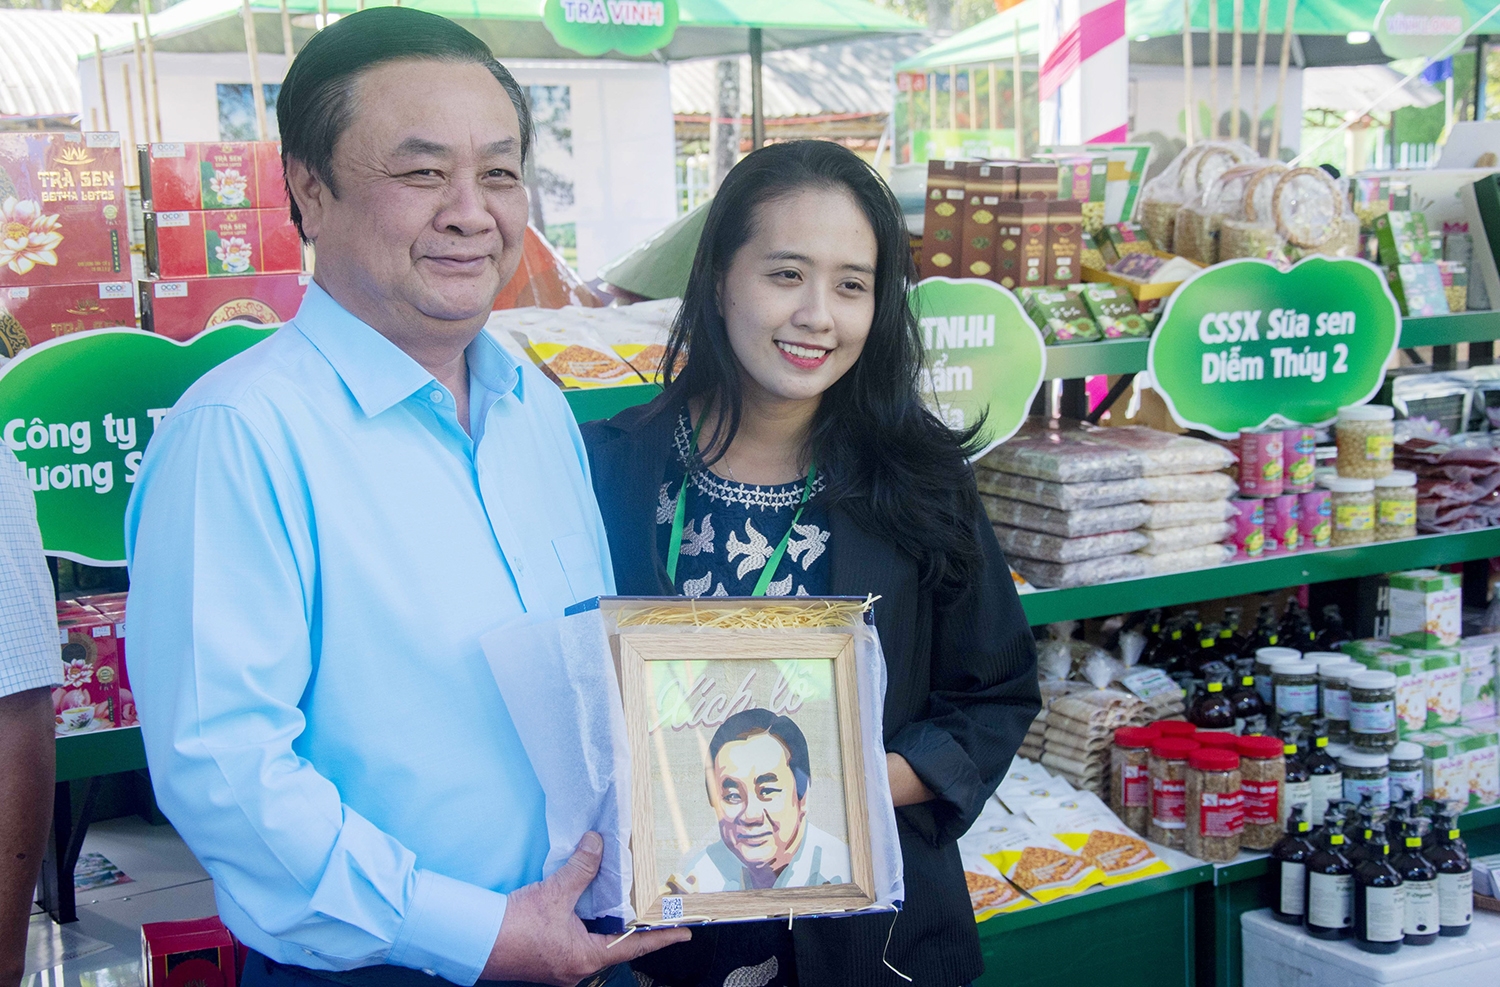 Bộ trưởng Bộ Nông nghiệp và Phát triển Nông thôn, Lê Minh Hoan nhận món quà của đơn vị khởi nghiệp là bức chân dung hết sức ý nghĩa được làm từ sợi Sen